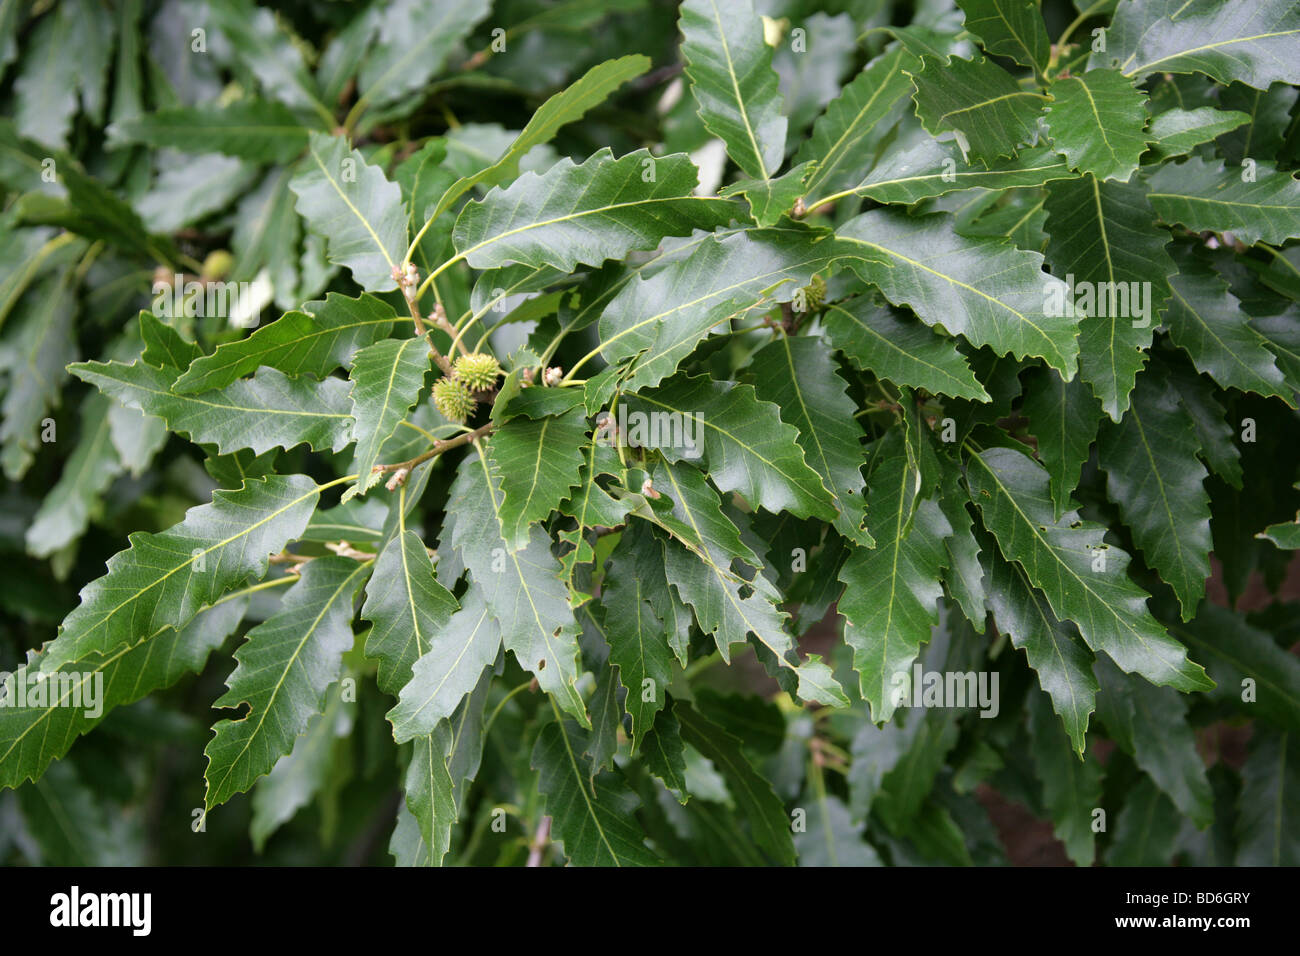 Chêne à feuilles de châtaignier de feuilles d'arbres, Quercus castaneifolia, Fagaceae, du Caucase et d'Iran. Banque D'Images